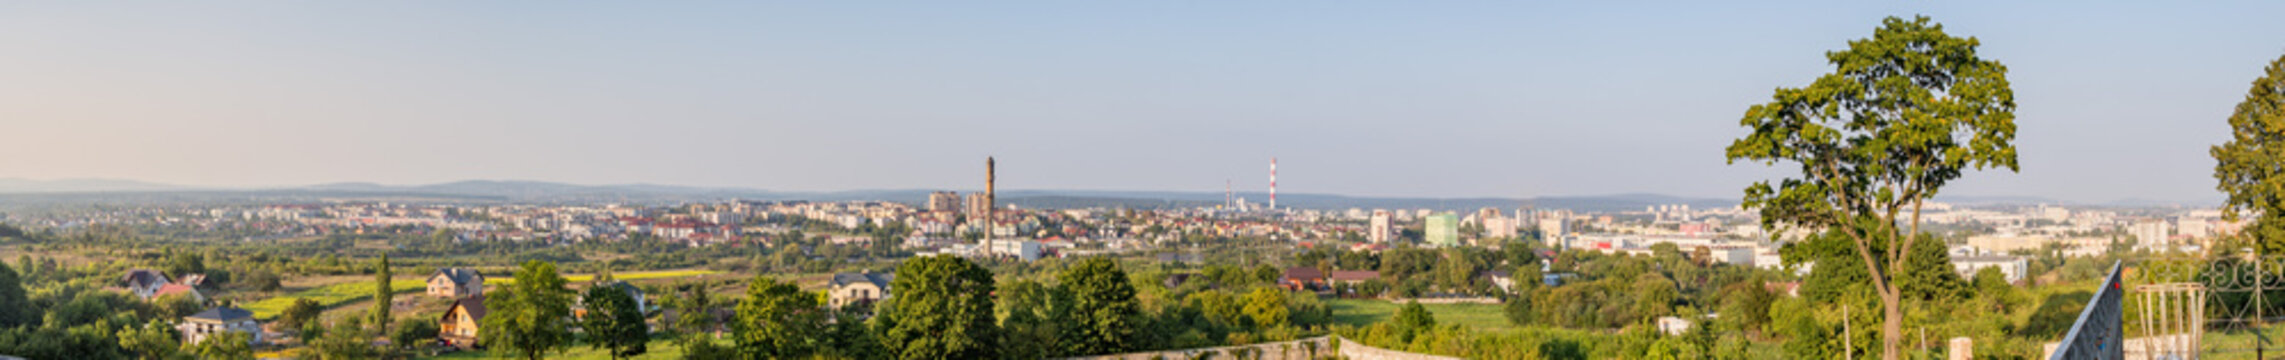 Kielce Panorama from Karczowka